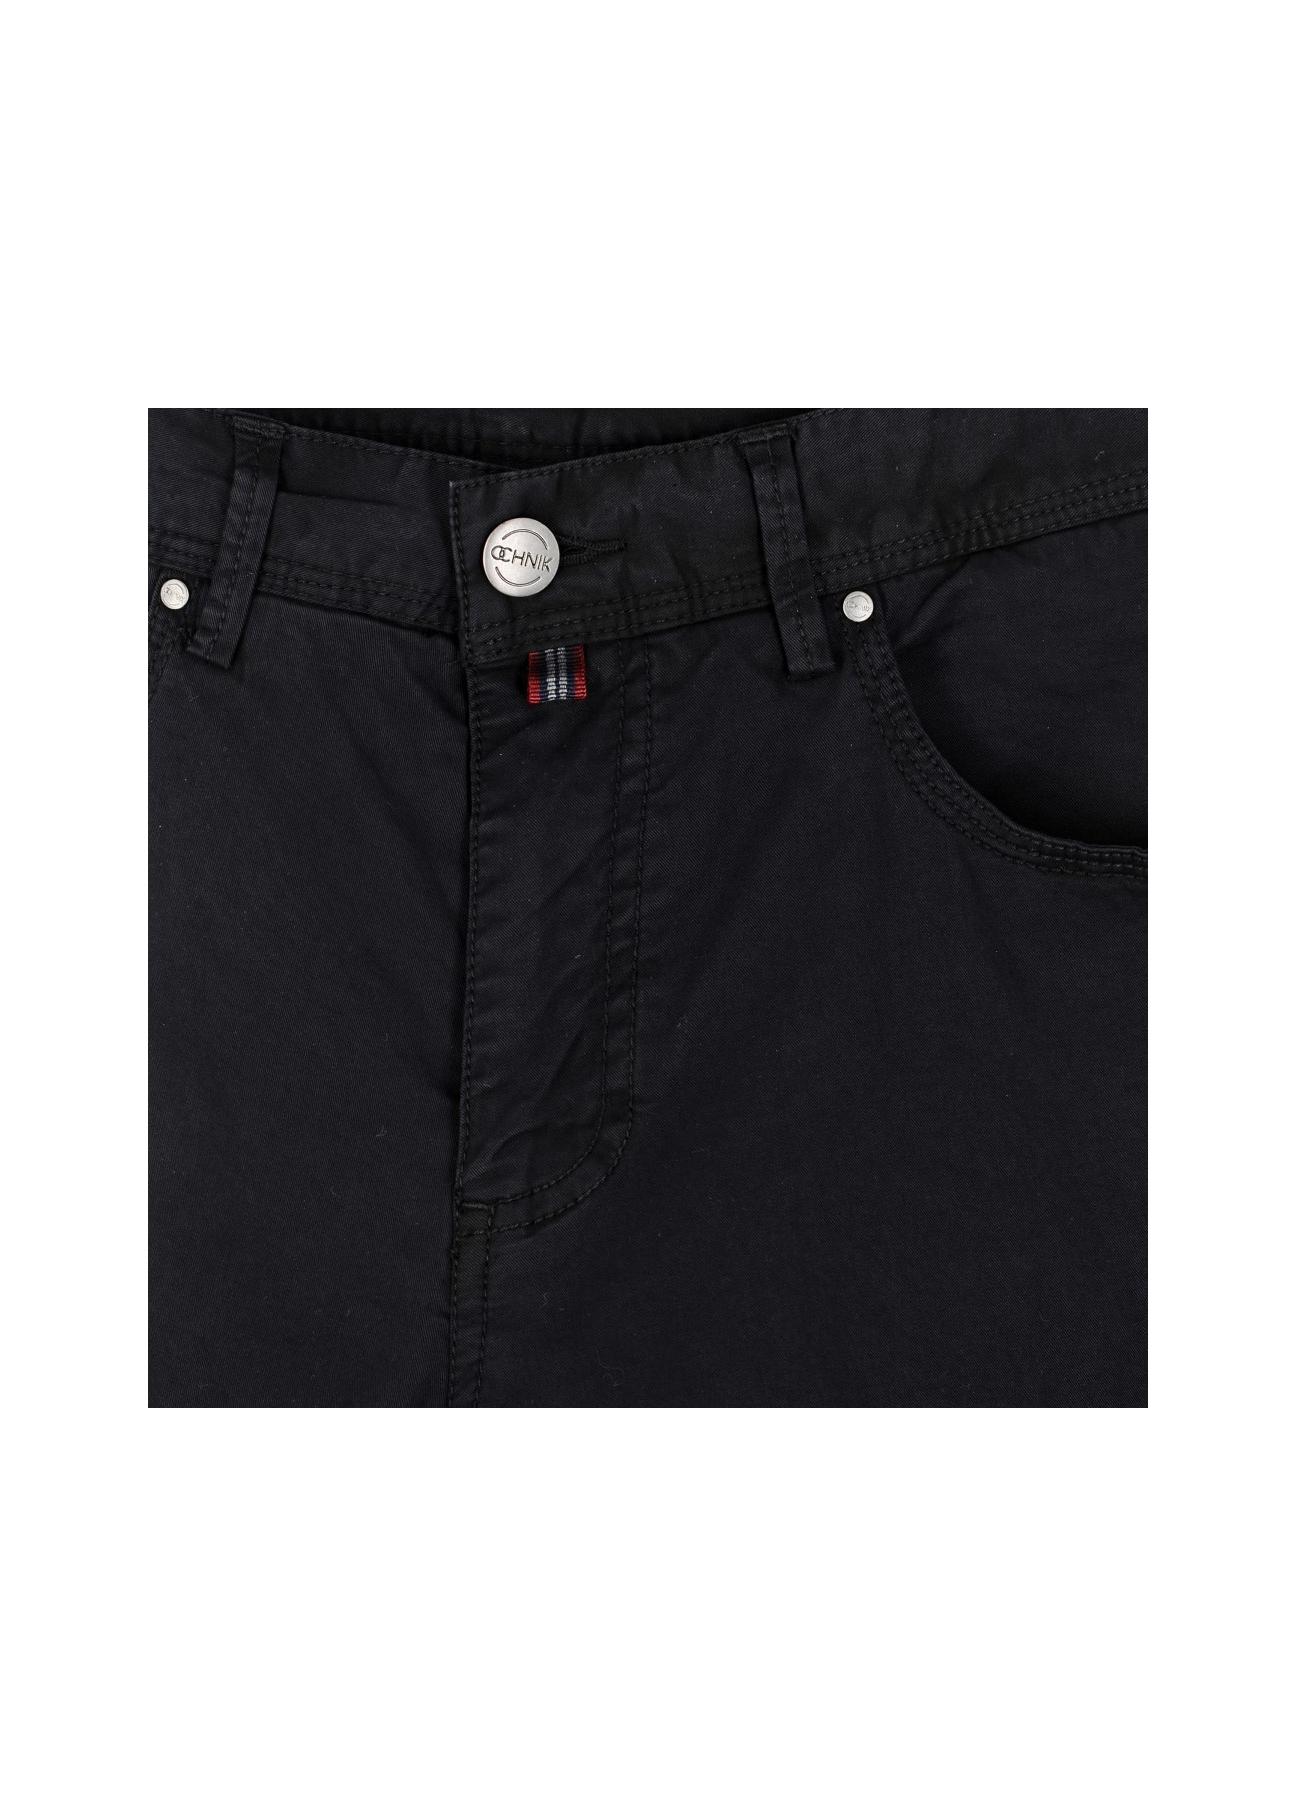 Spodnie męskie SPOMT-0015-99(W17)